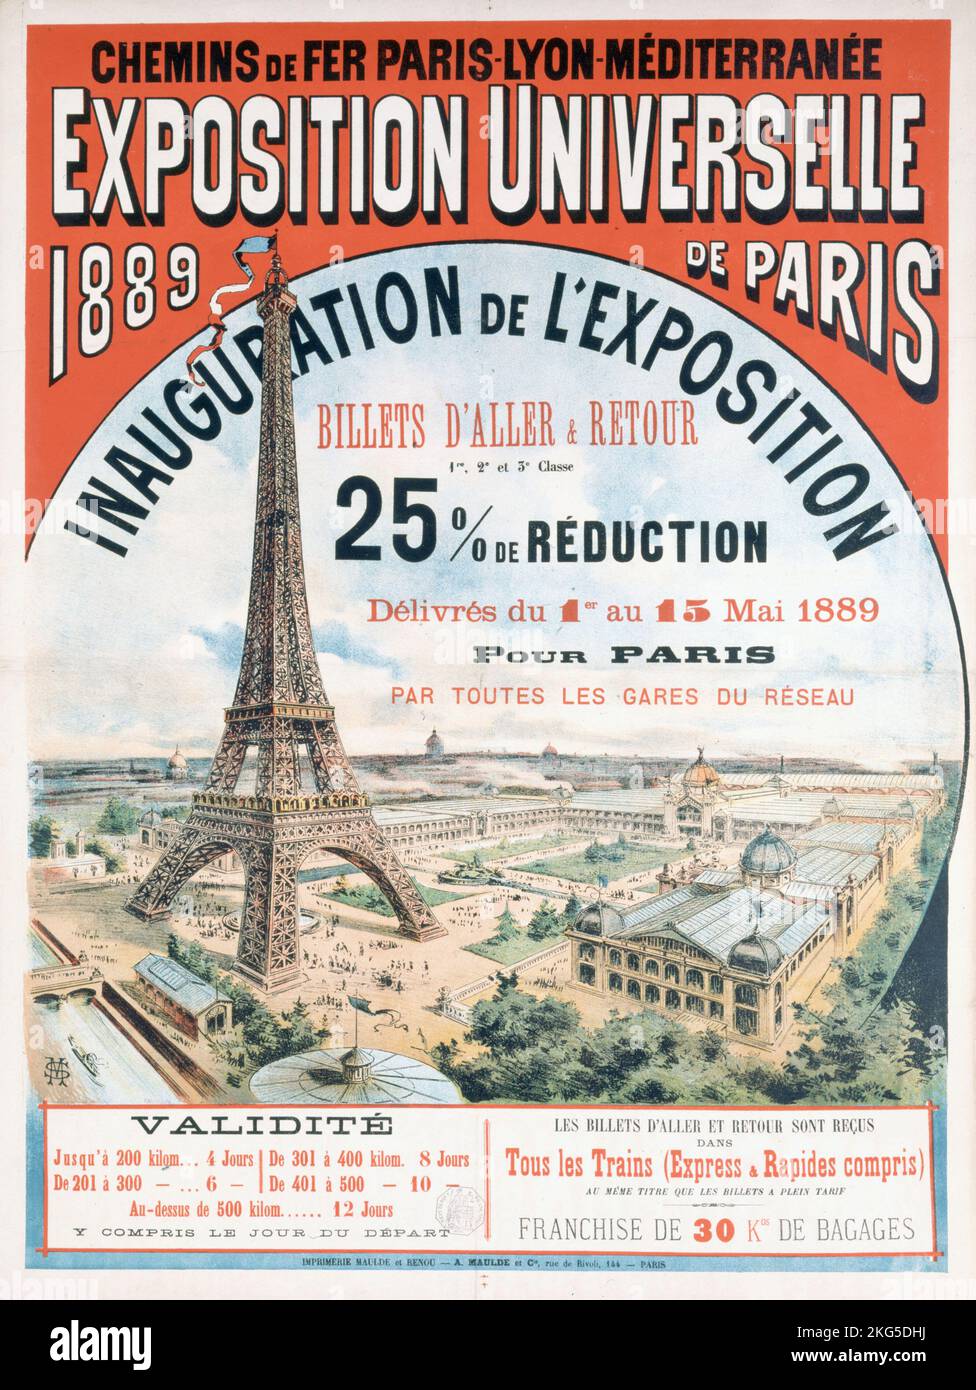 Inauguration de l'Exposition Universelle de 1889. Chemins de fer Paris-Lyon-Méditerranée. Paris, musée Carnavalet. Stock Photo